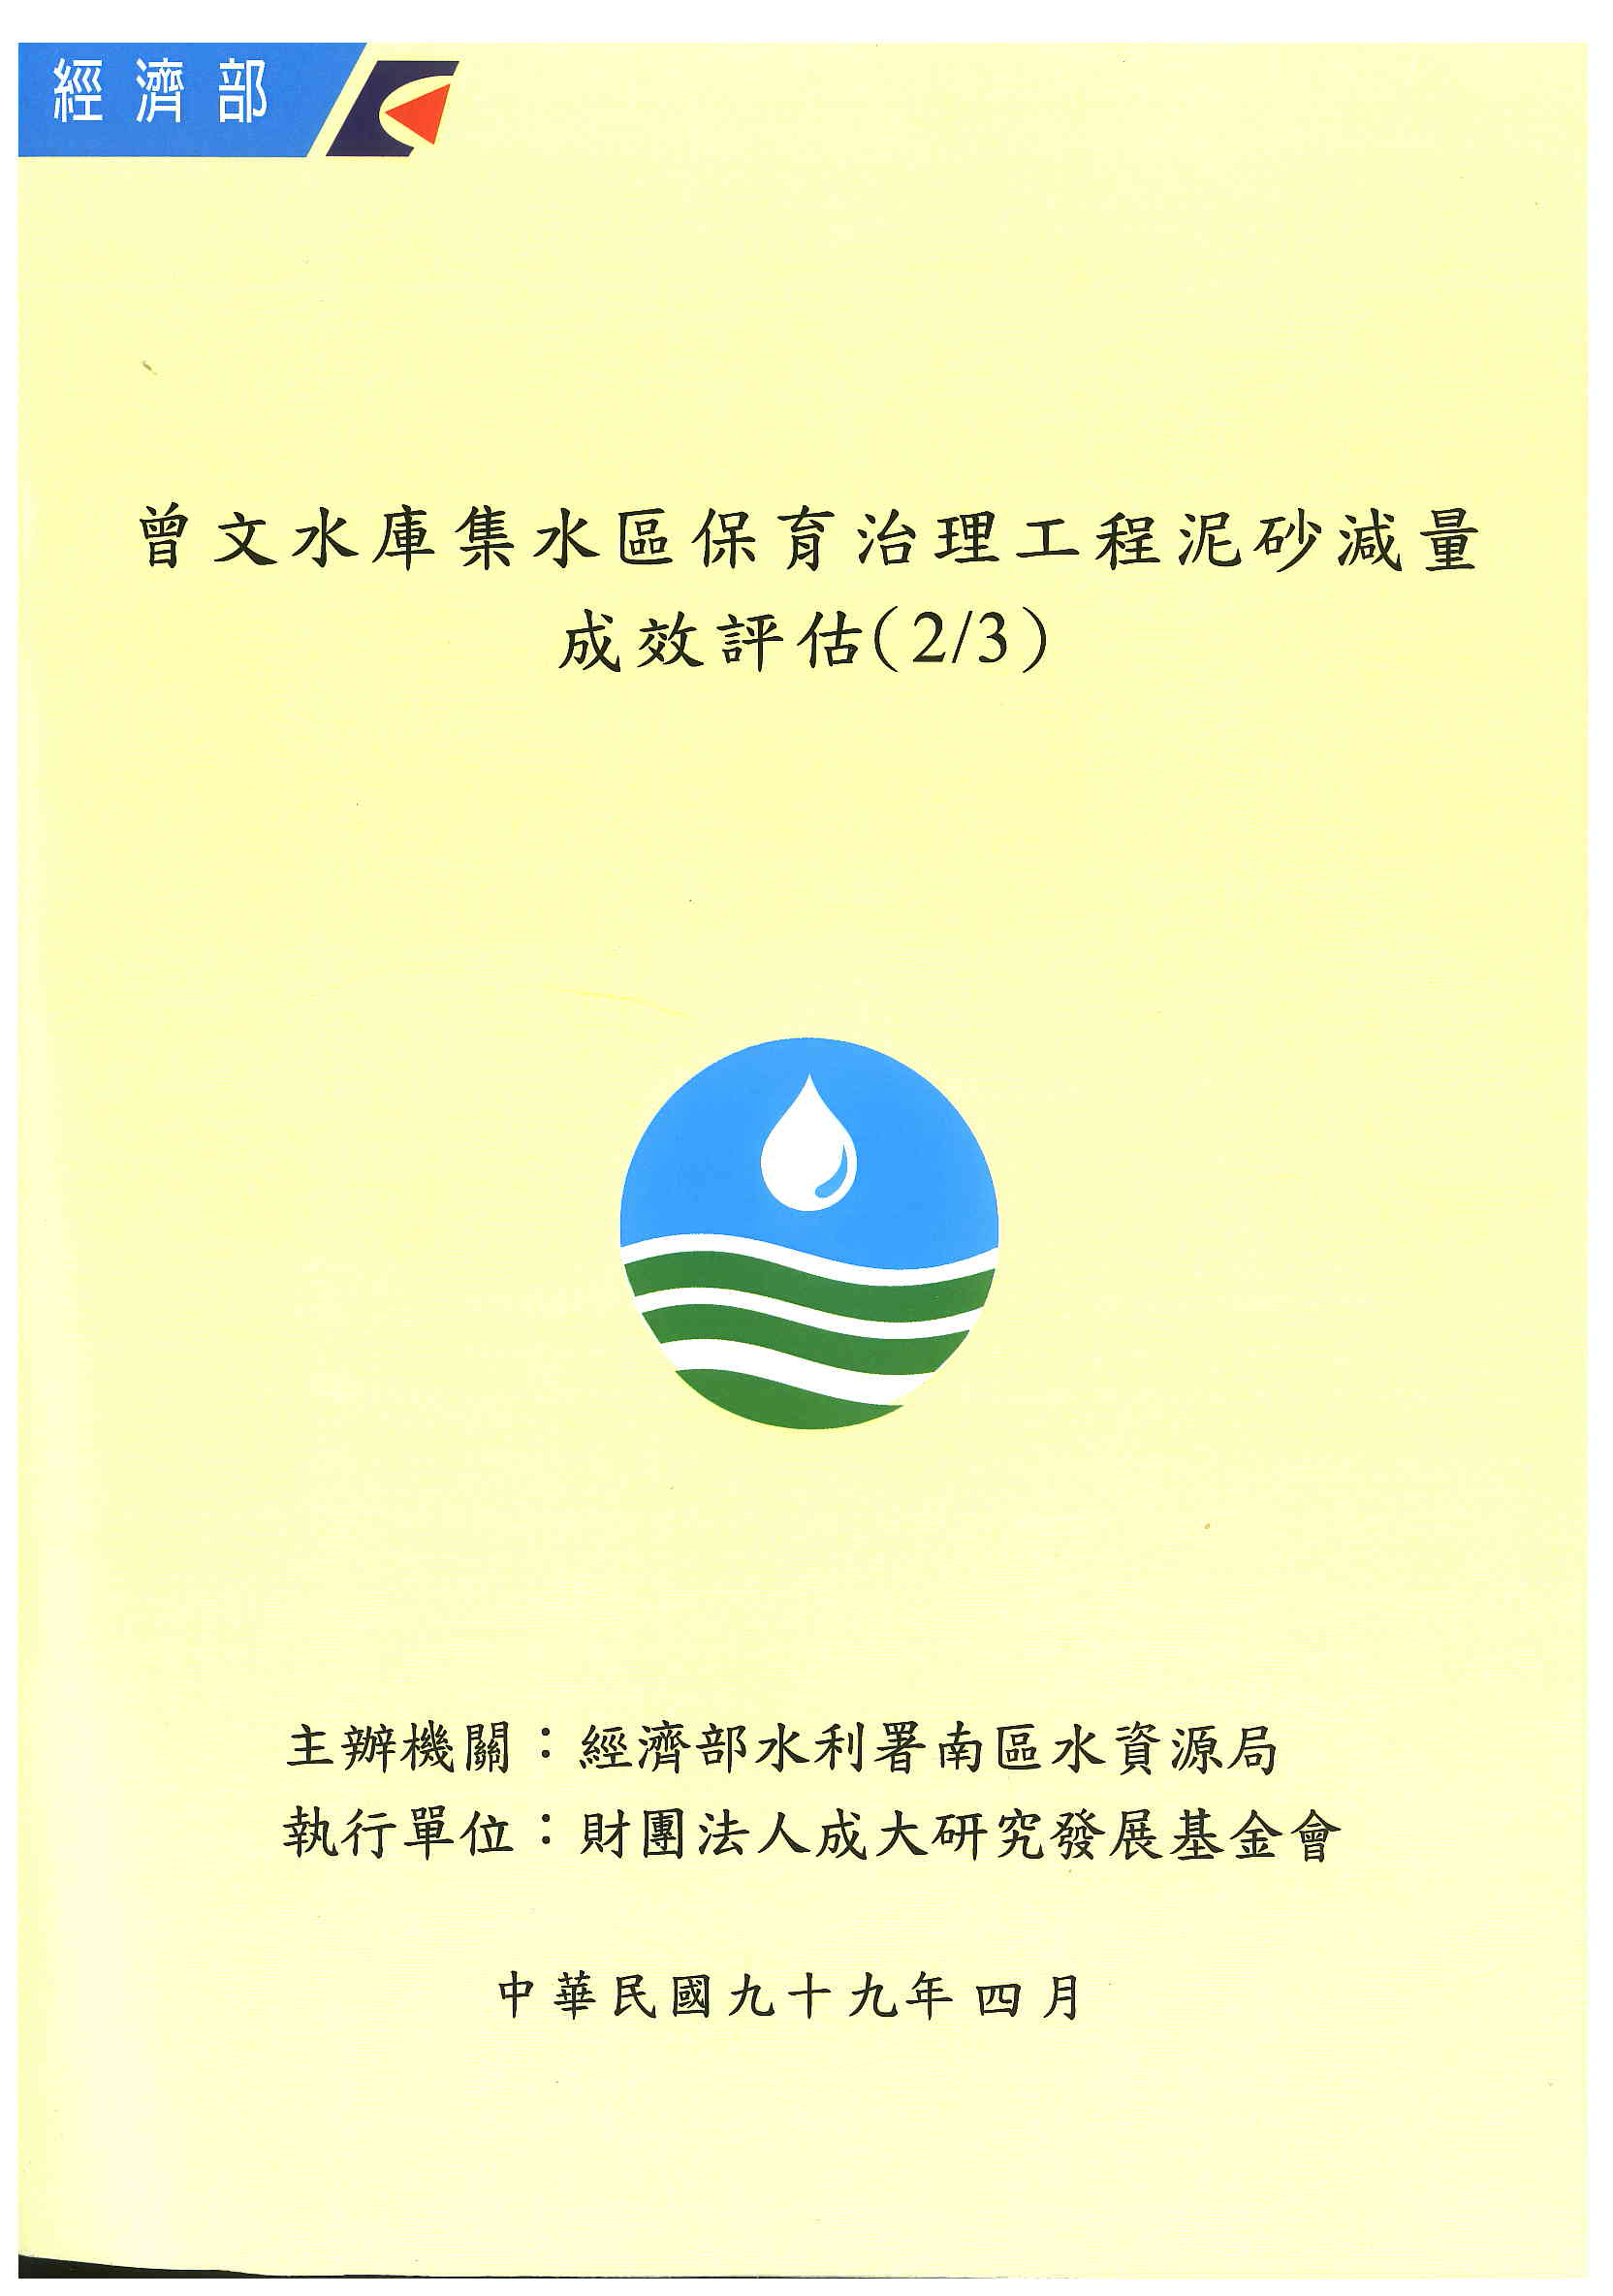 曾文水庫集水區保育治理工程泥砂減量成效評估(2/3)